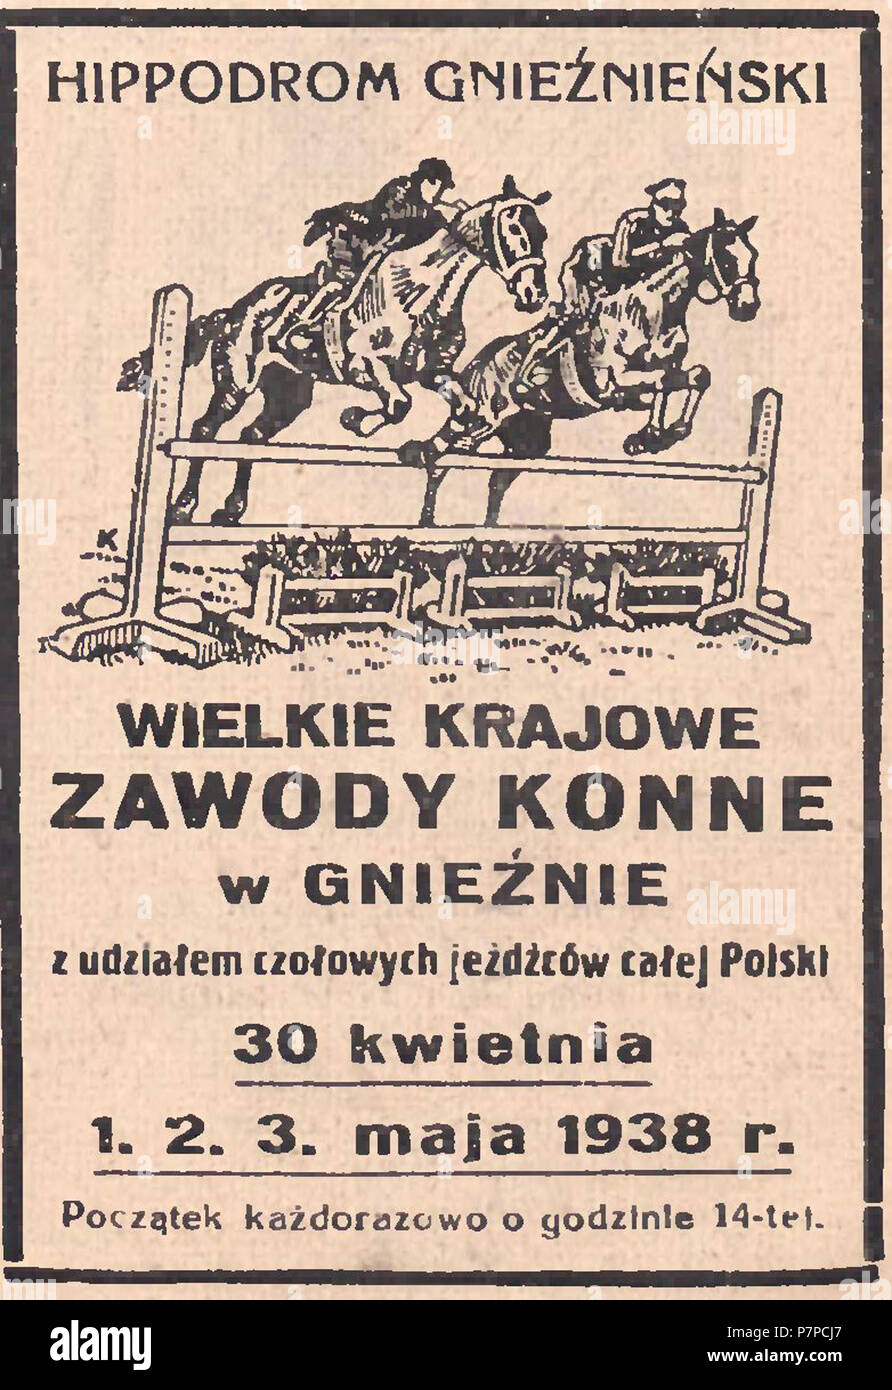 194 Ippodromo gnieźnieński - Wielkie zawody konne w Gnieźnie, 1938 Foto Stock